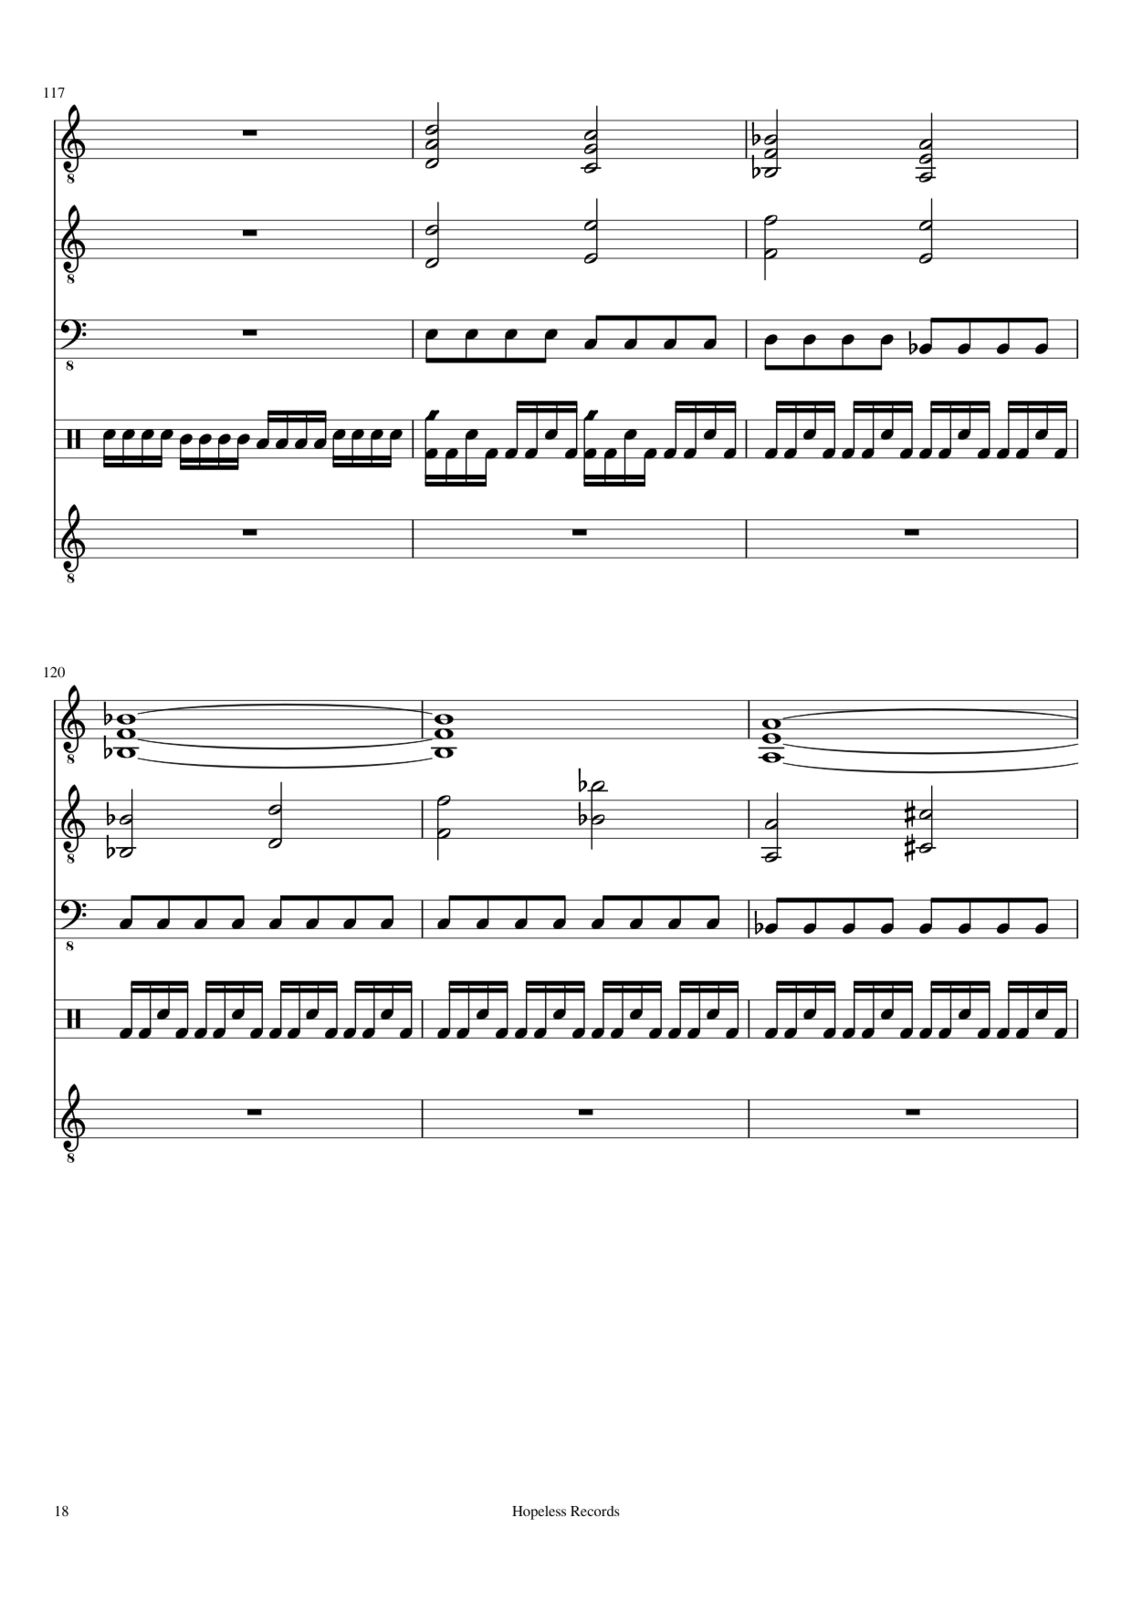 Prervannaya lyubov ili arbuznaya korka slide, Image 6